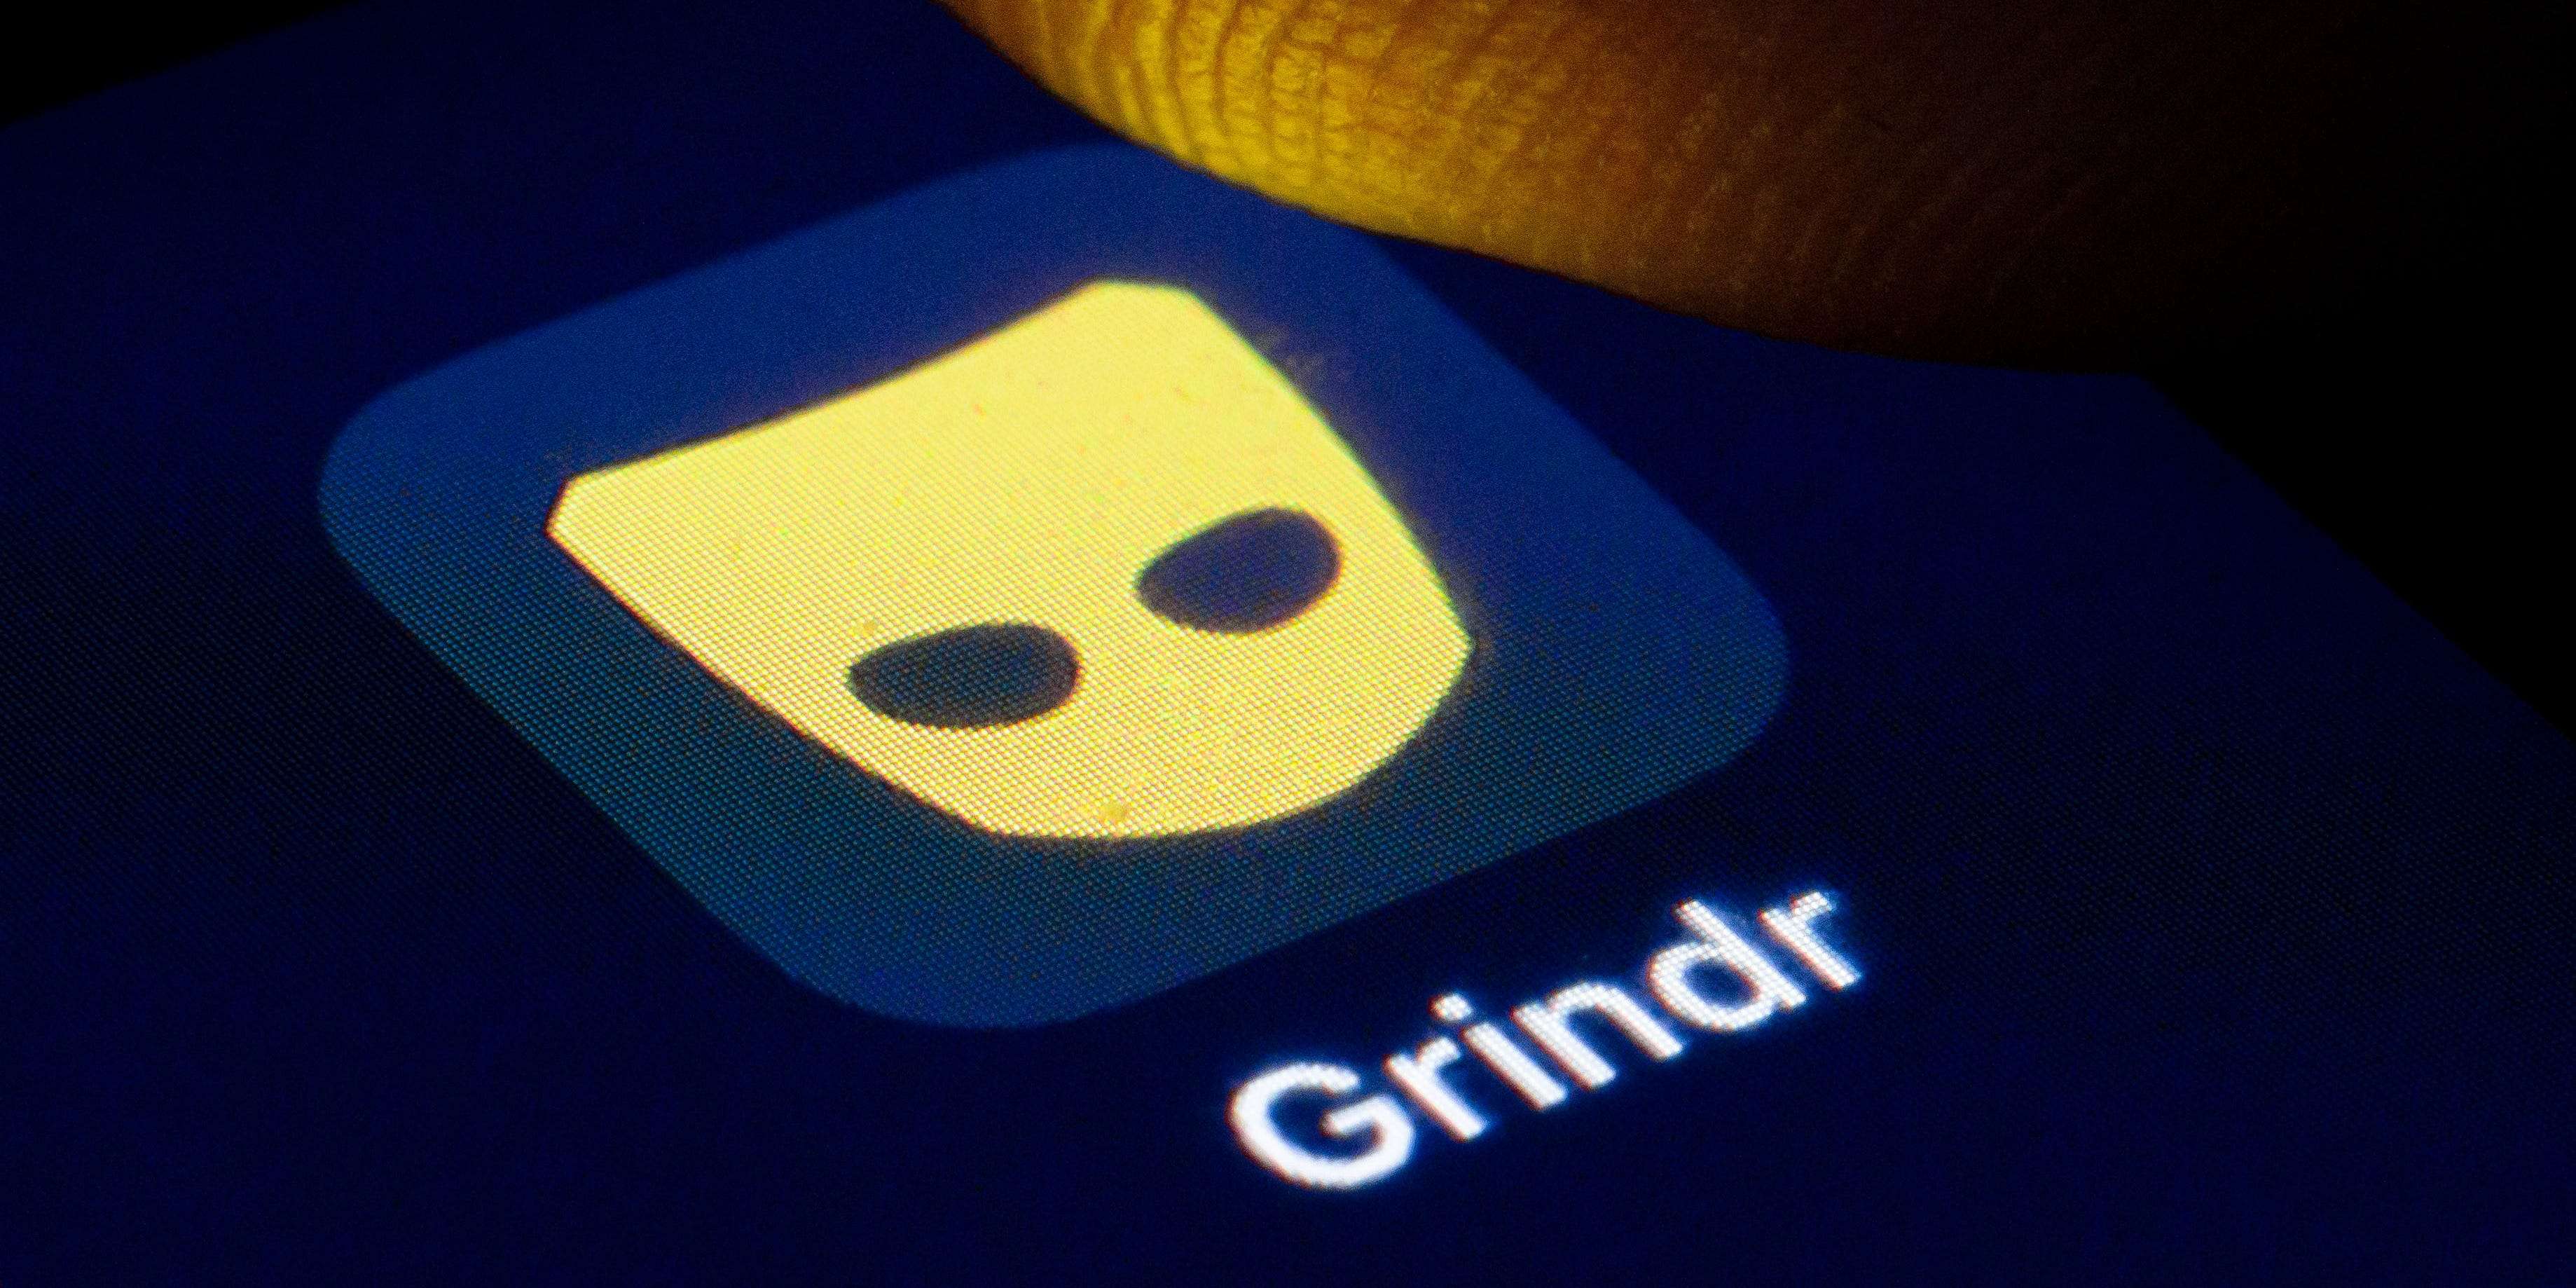 Grindr app the Download Grindr